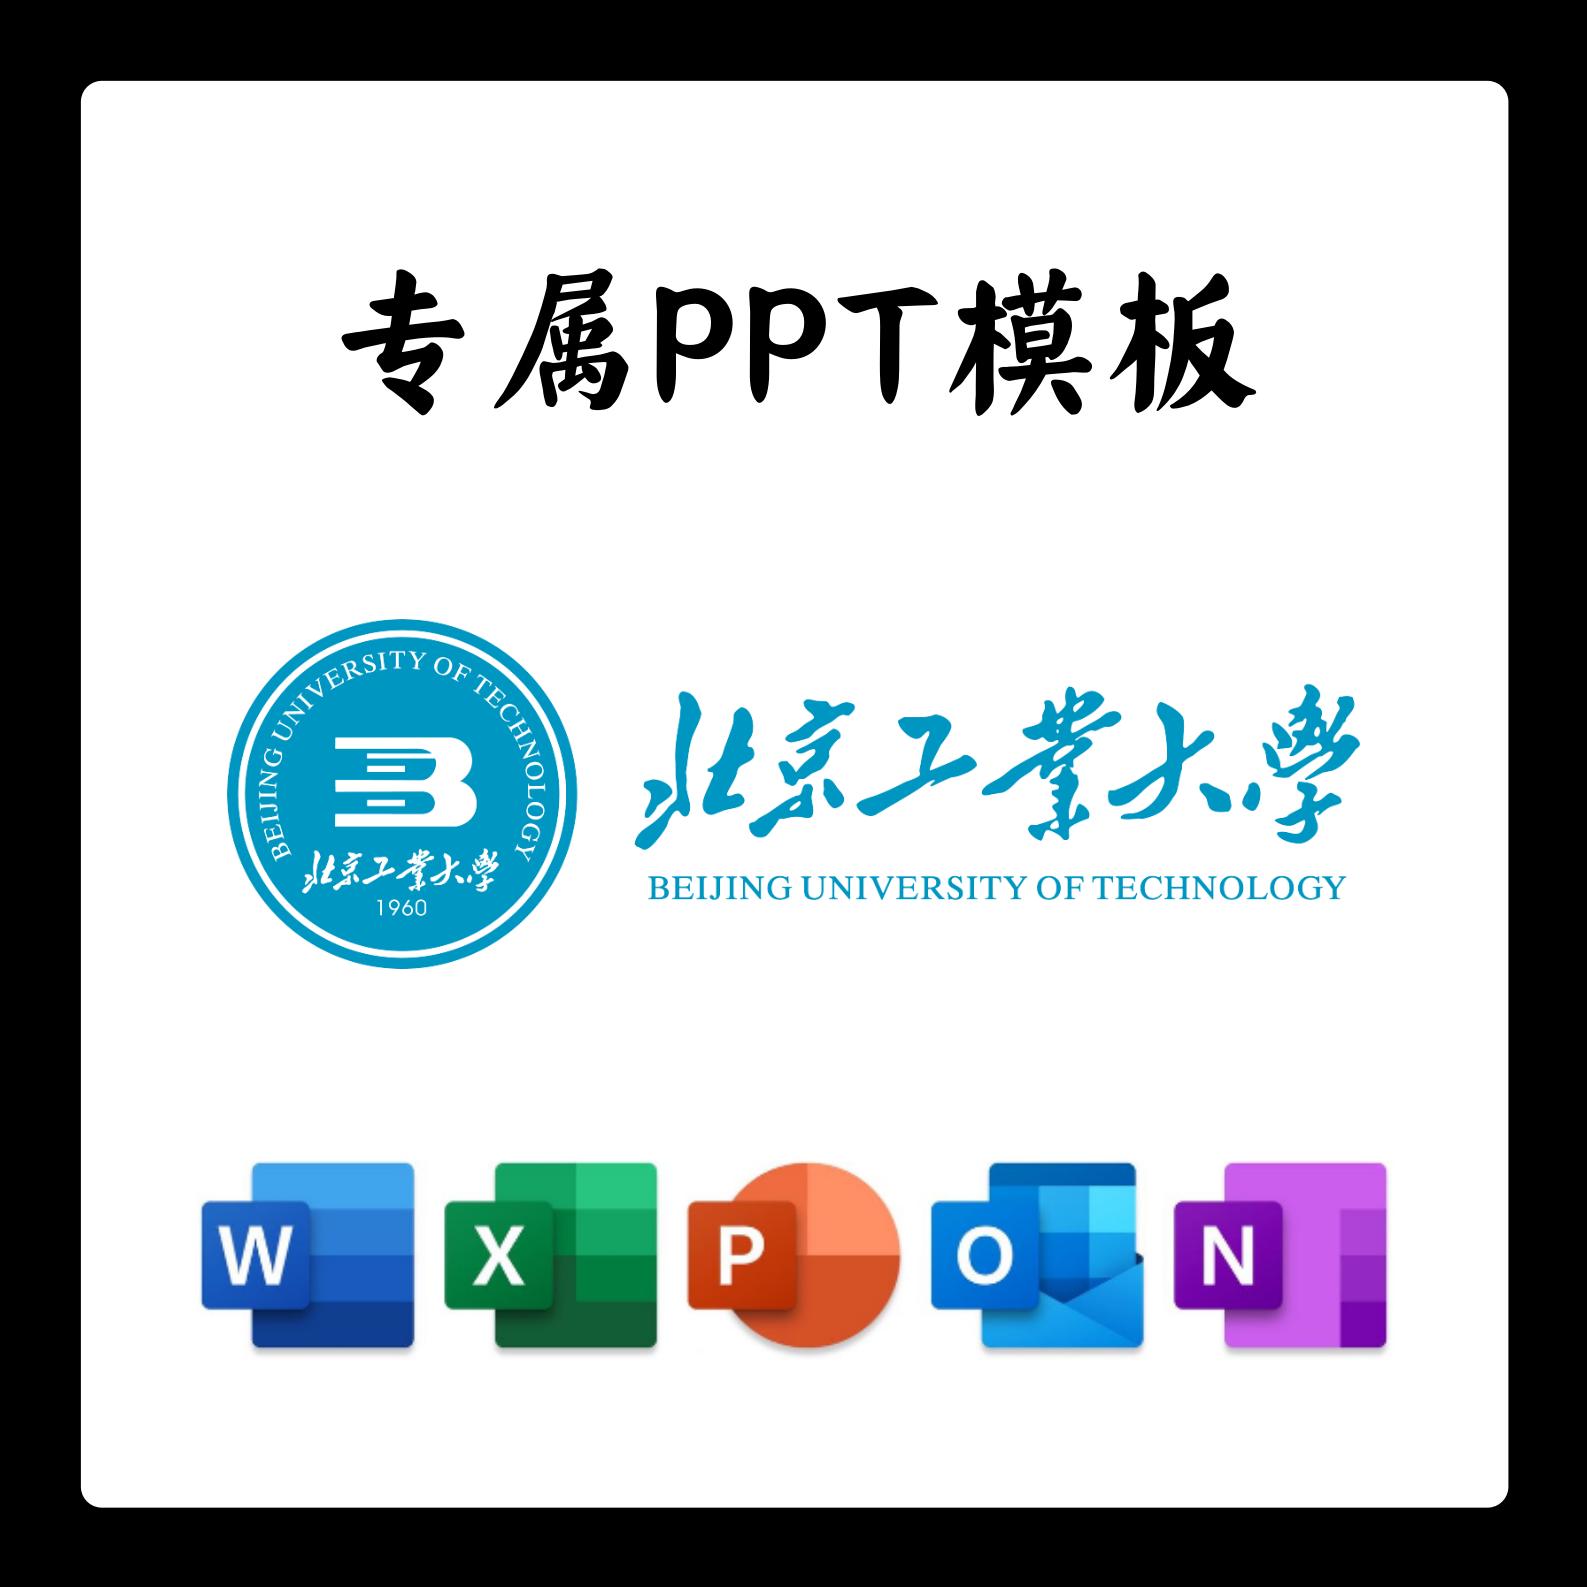 北京工业大学PPT模板北工大答辩PPT开题中期结题毕业答辩简约大气